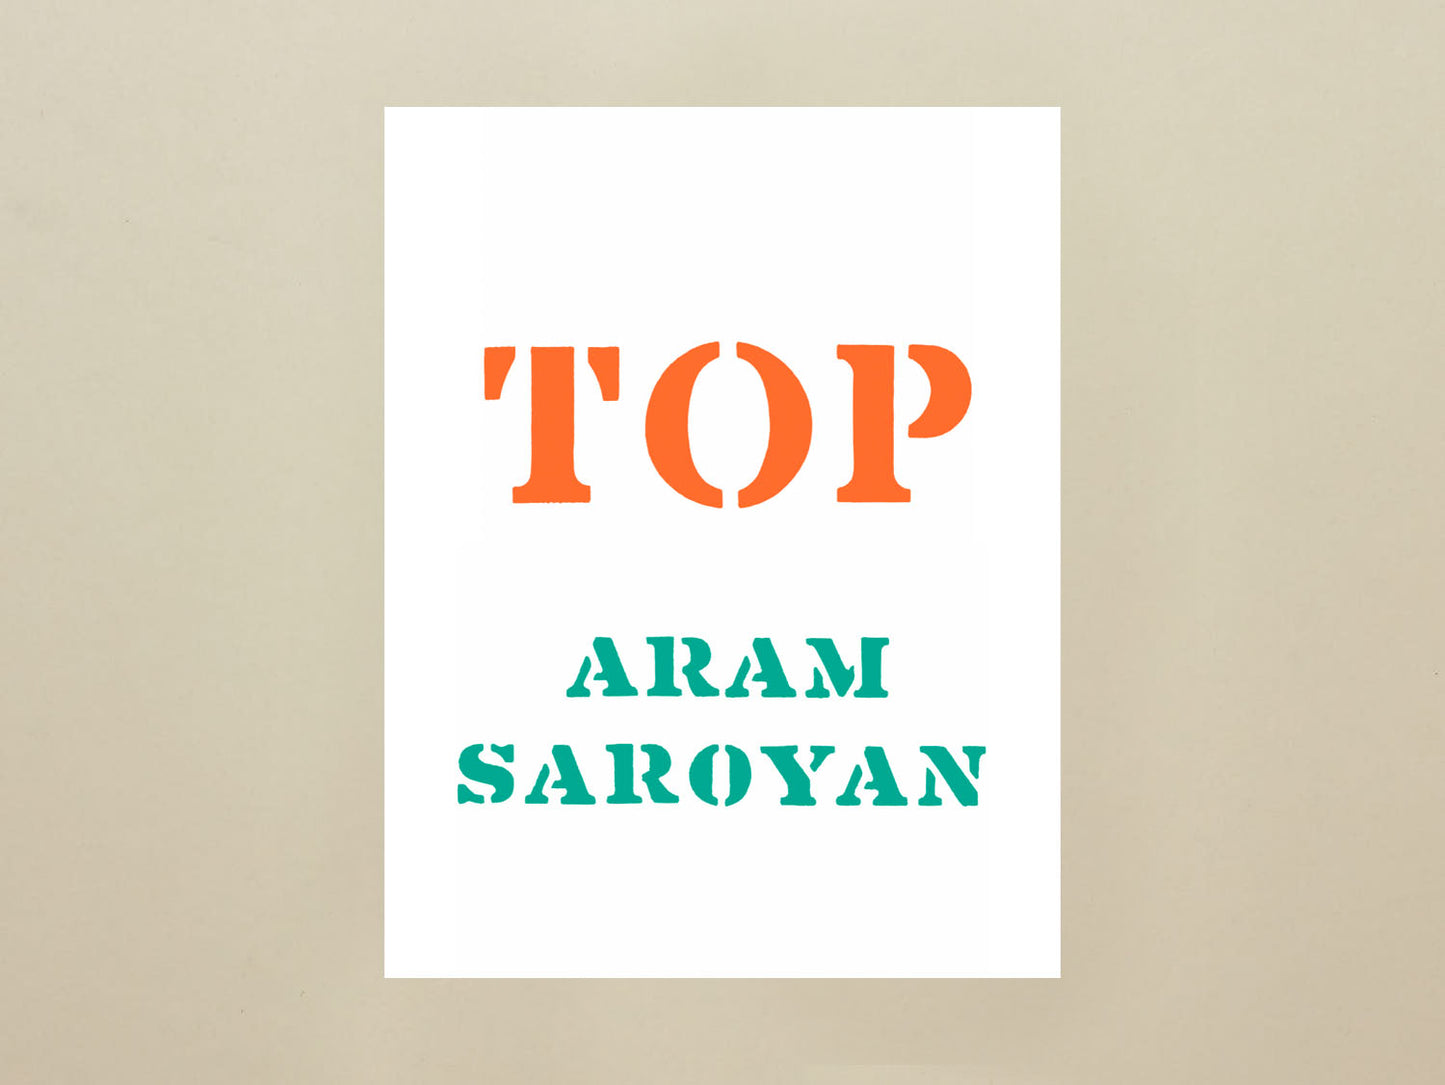 Aram Saroyan, TOP